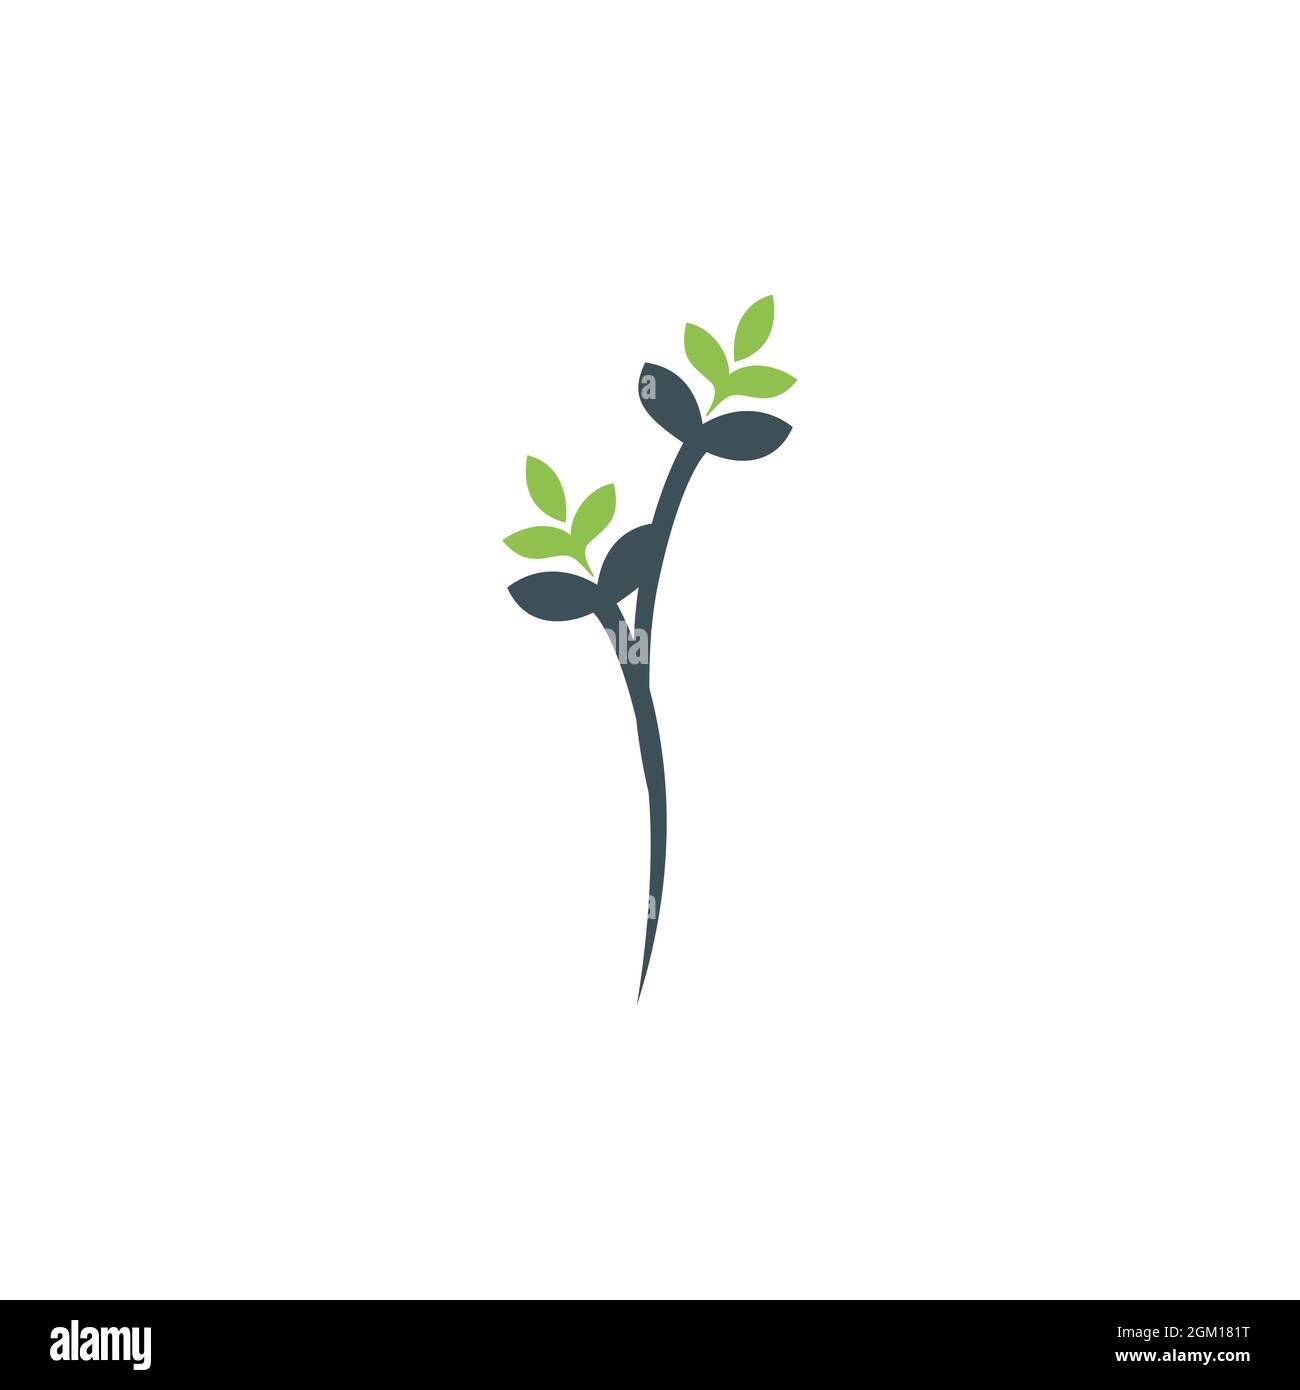 design graphique vectoriel élégant avec logo représentant des feuilles de plantes Illustration de Vecteur